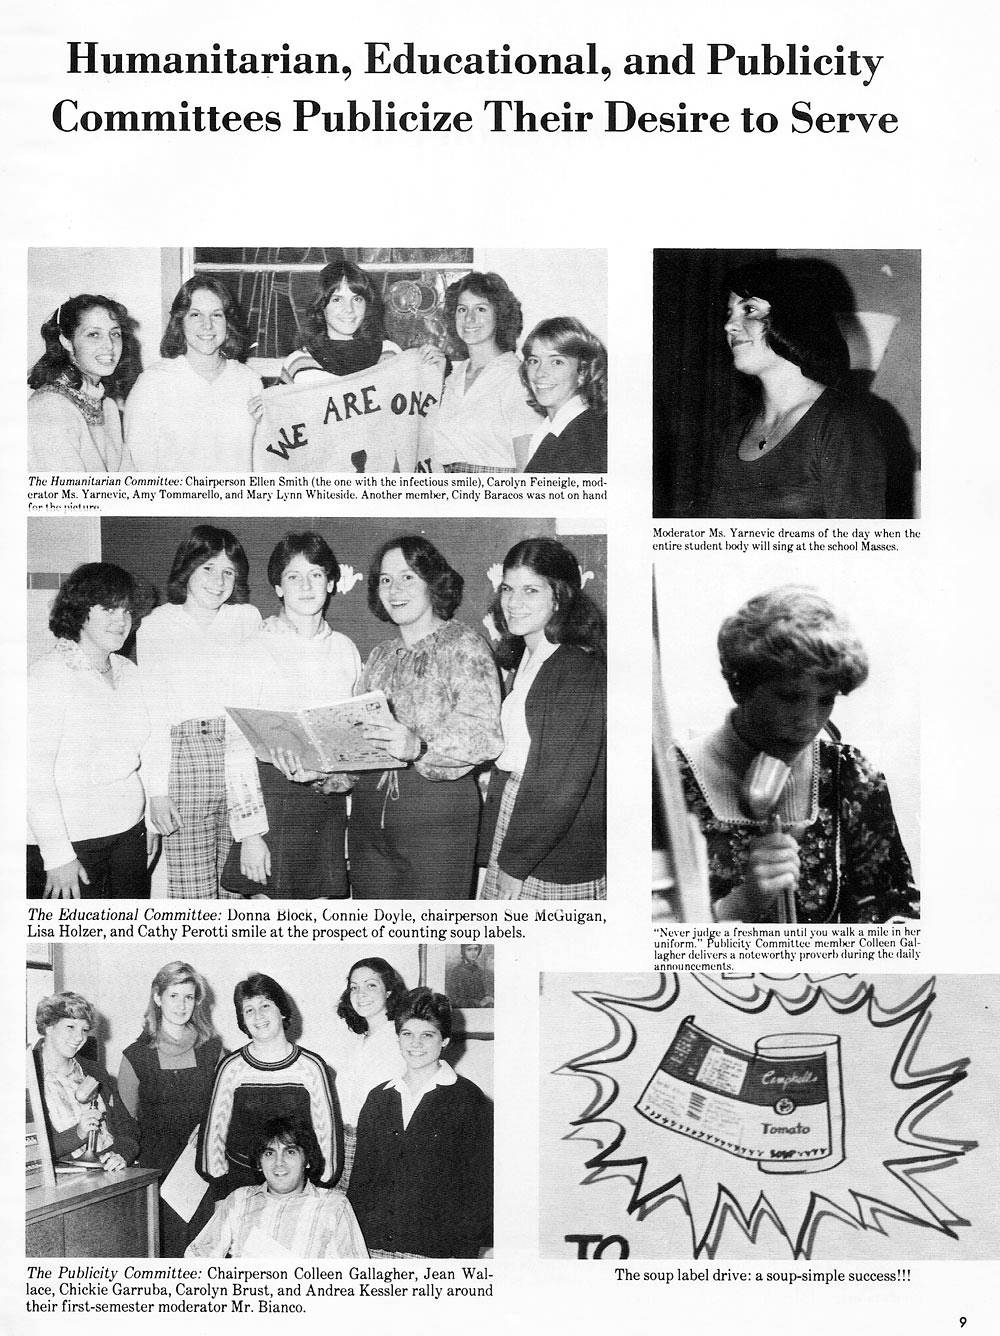 Elizabeth Seton High School Class of 1979